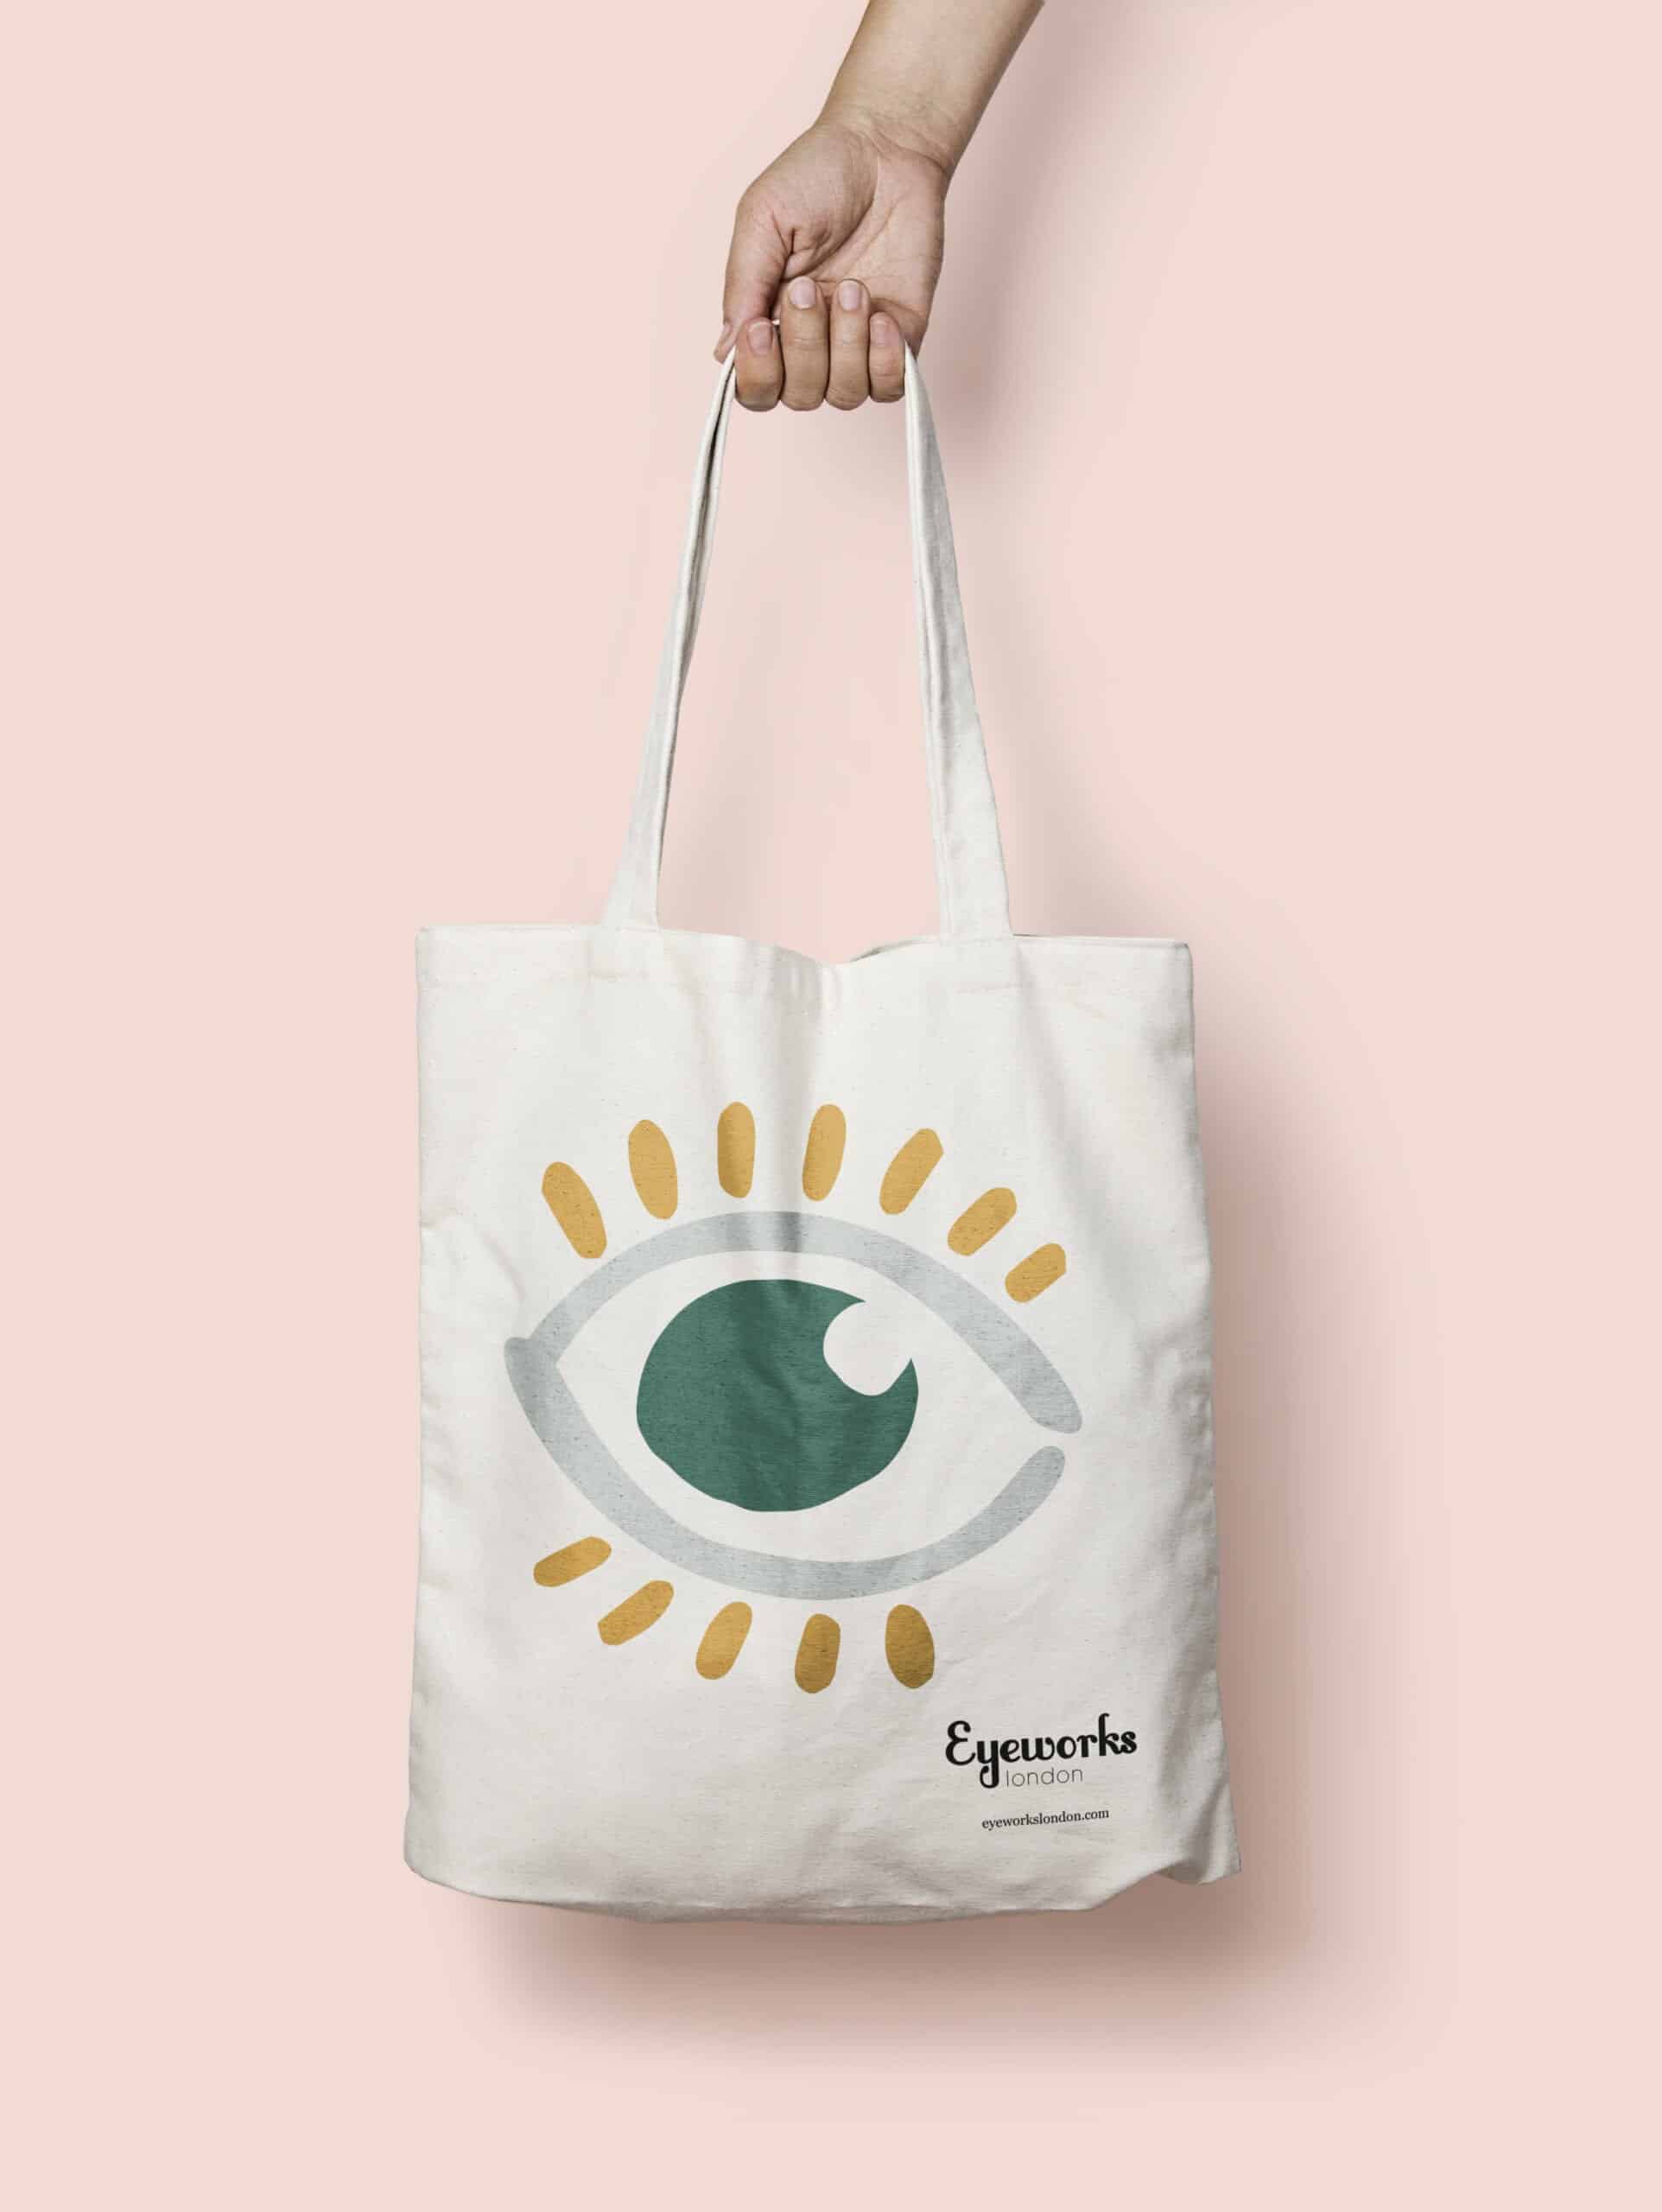 eyeworks london eye layout tote bag design